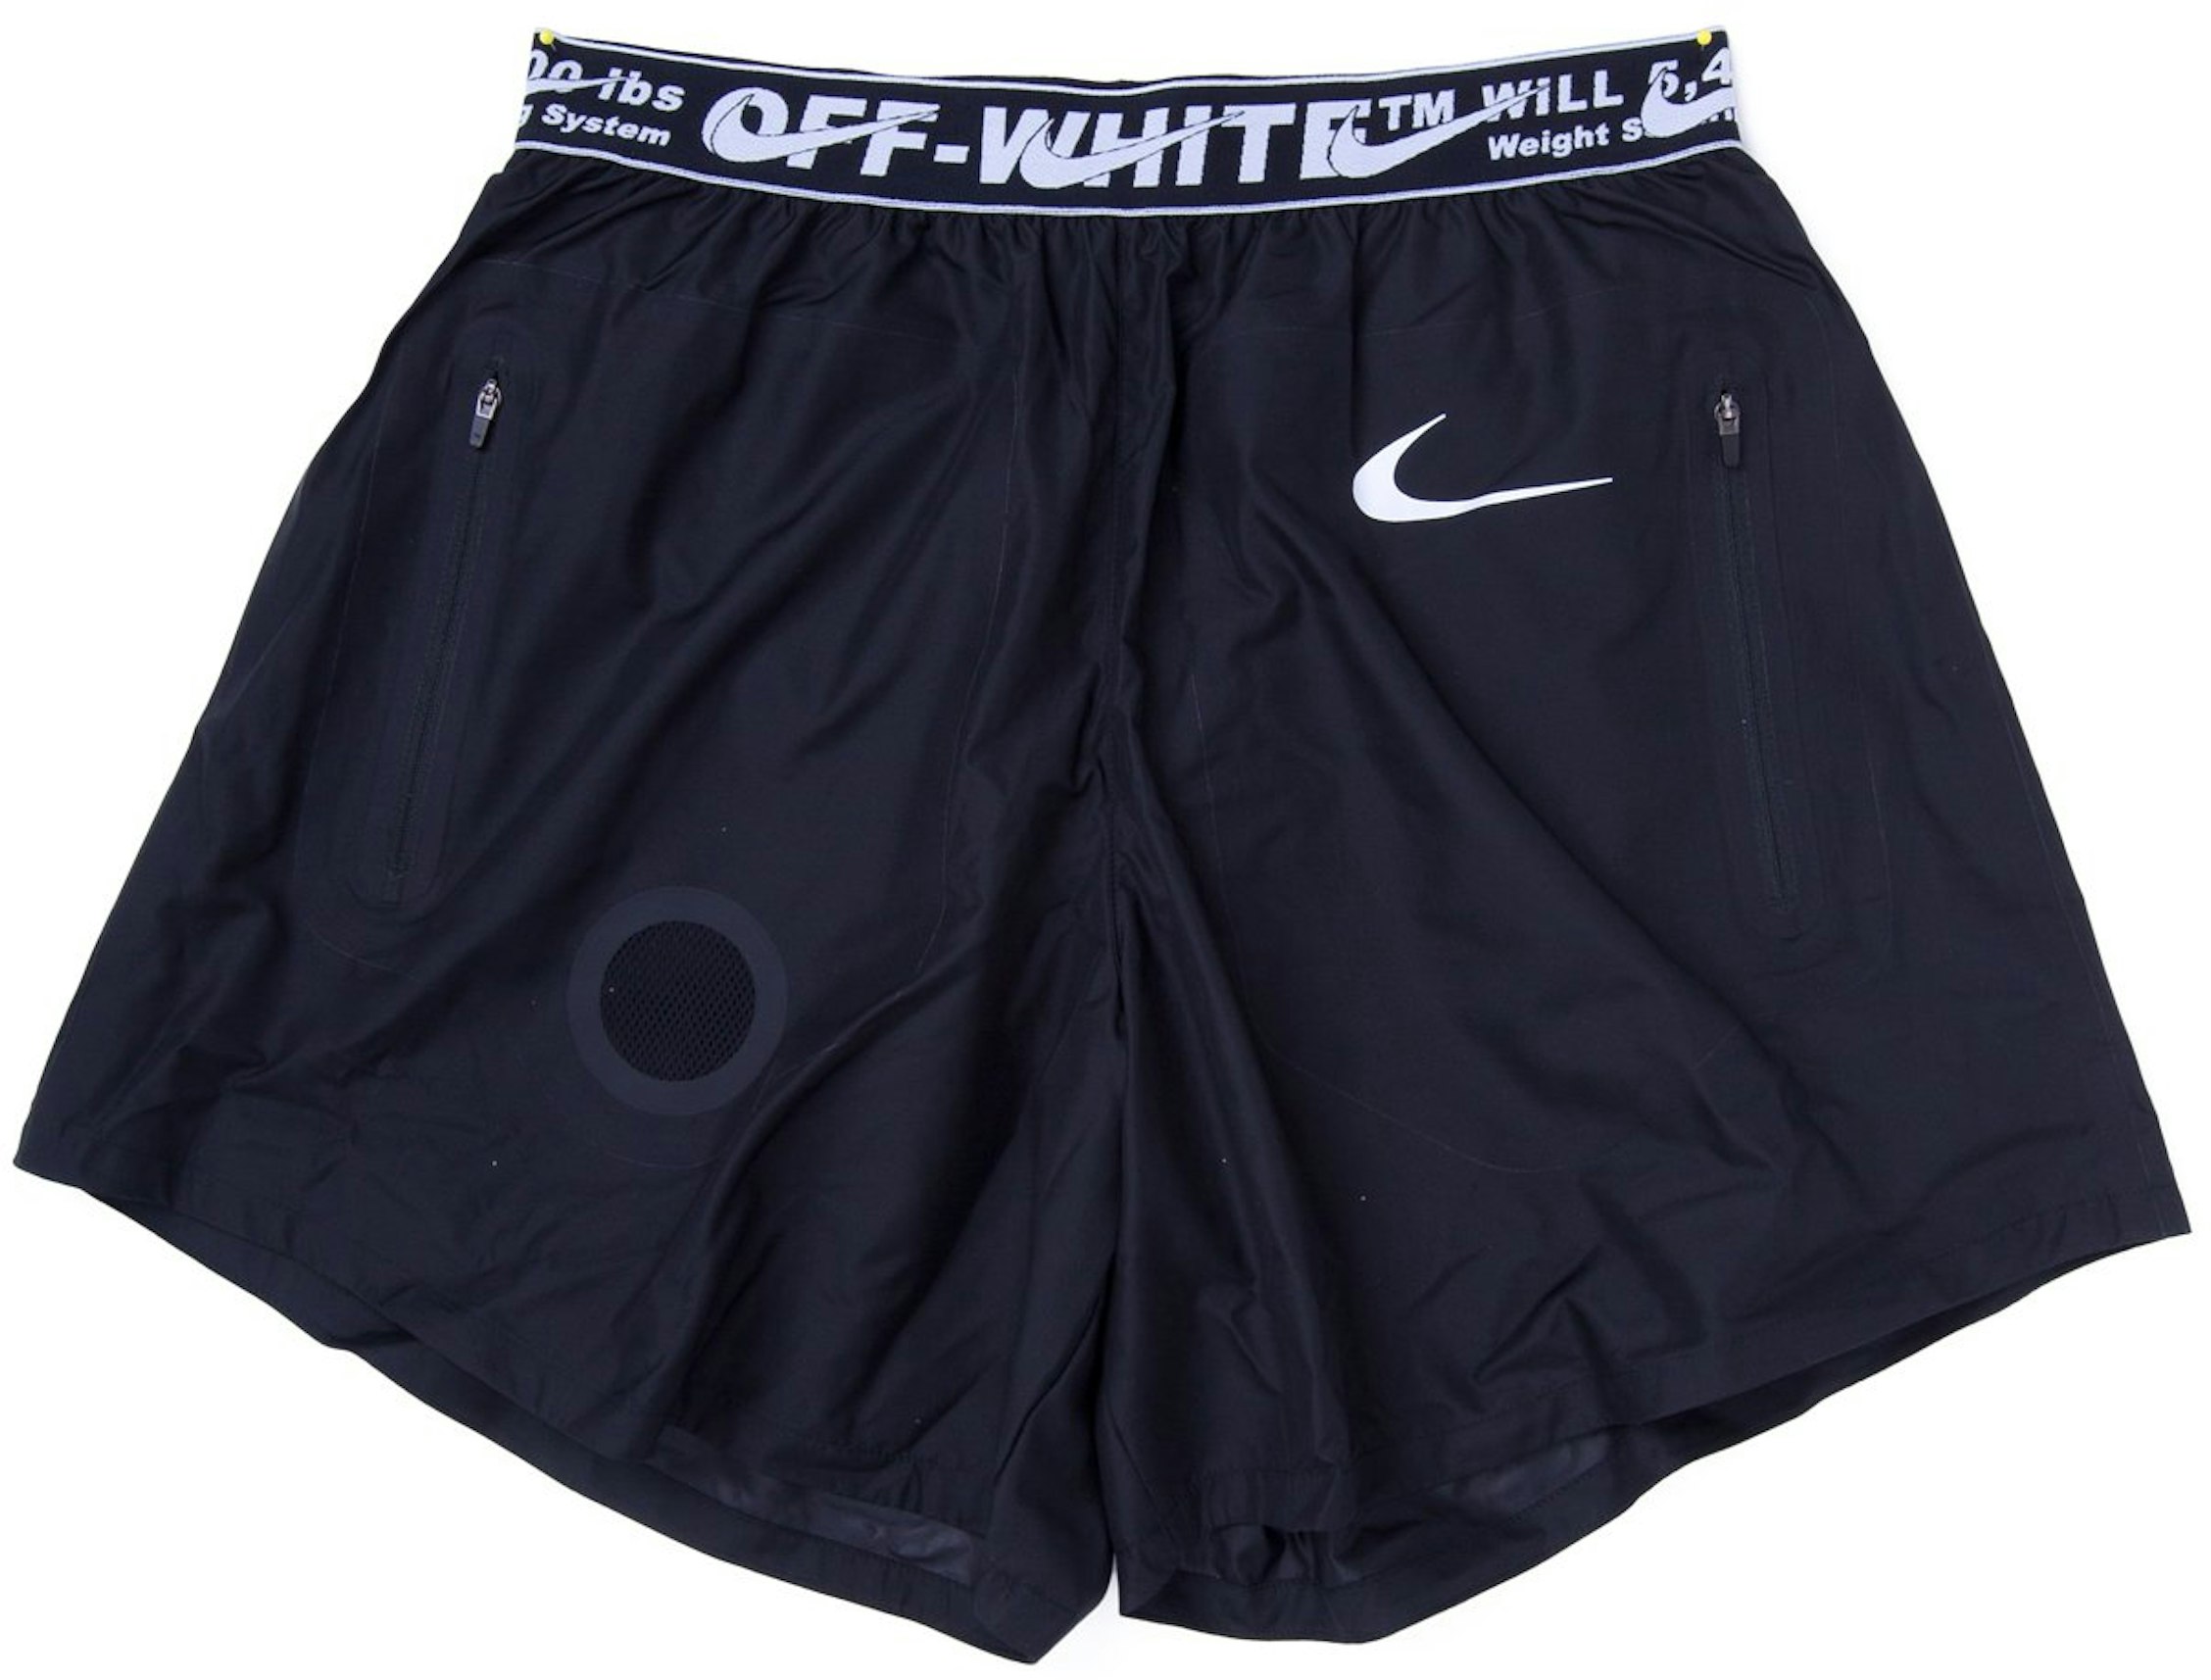 OFF-WHITE x Nike Shorts Black - Men's - US